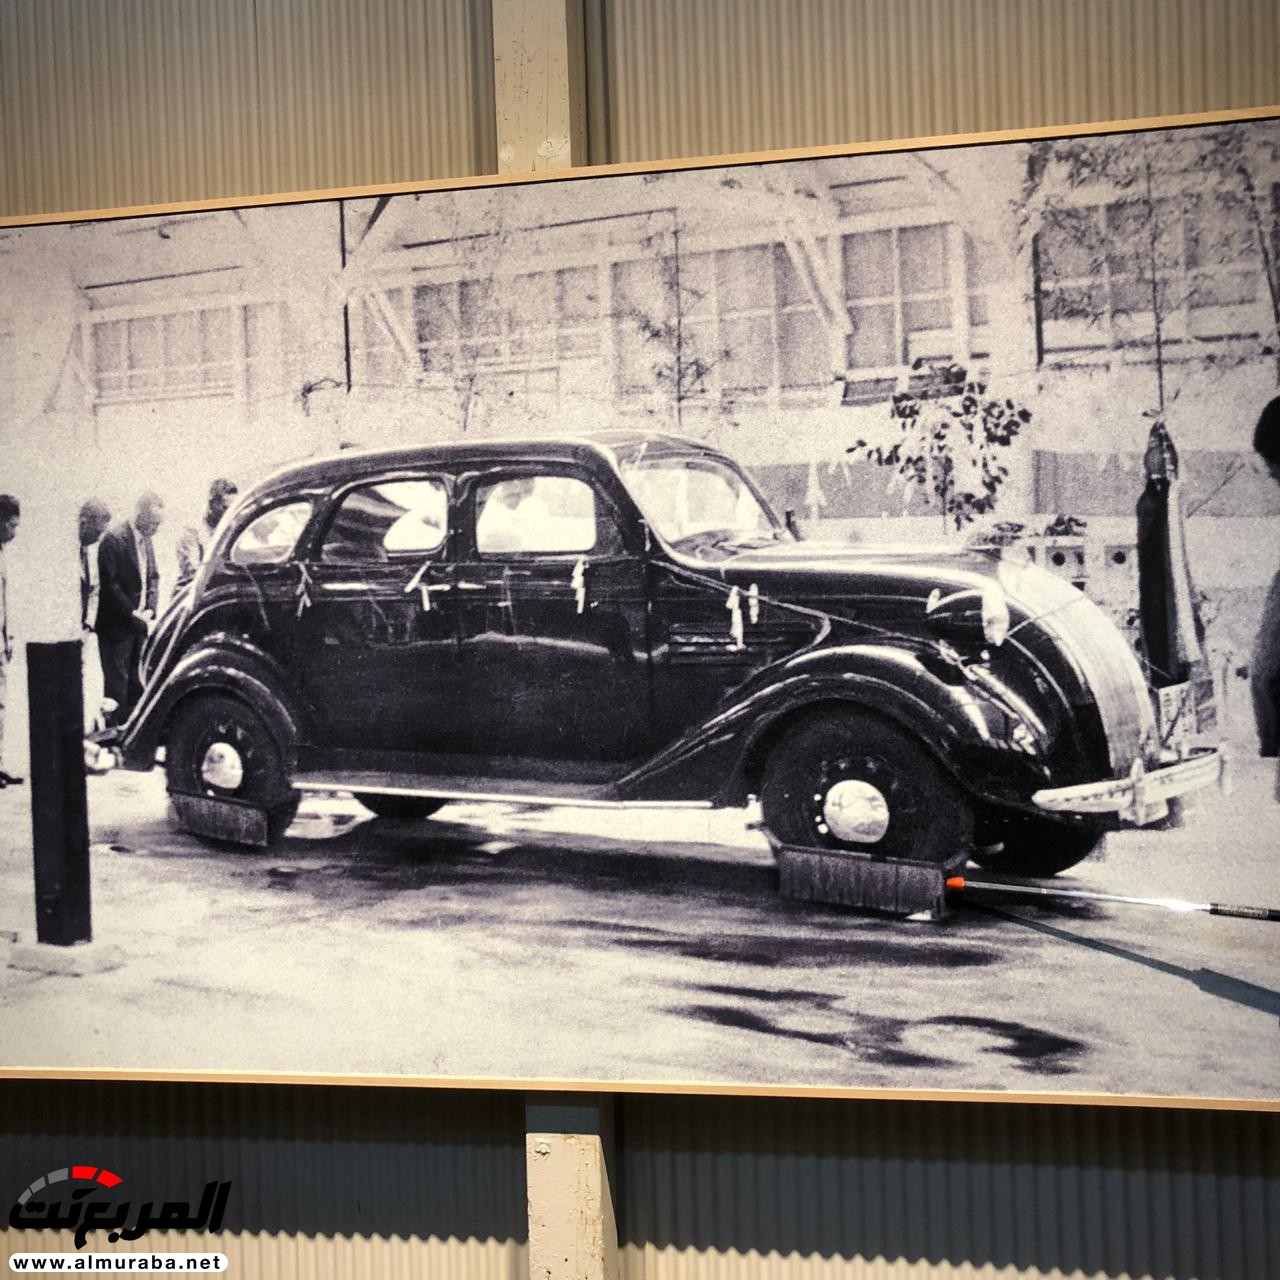 "بالصور" تعرف على تاريخ تويوتا وكيف بدأت أكبر صانعة سيارات يابانية 26